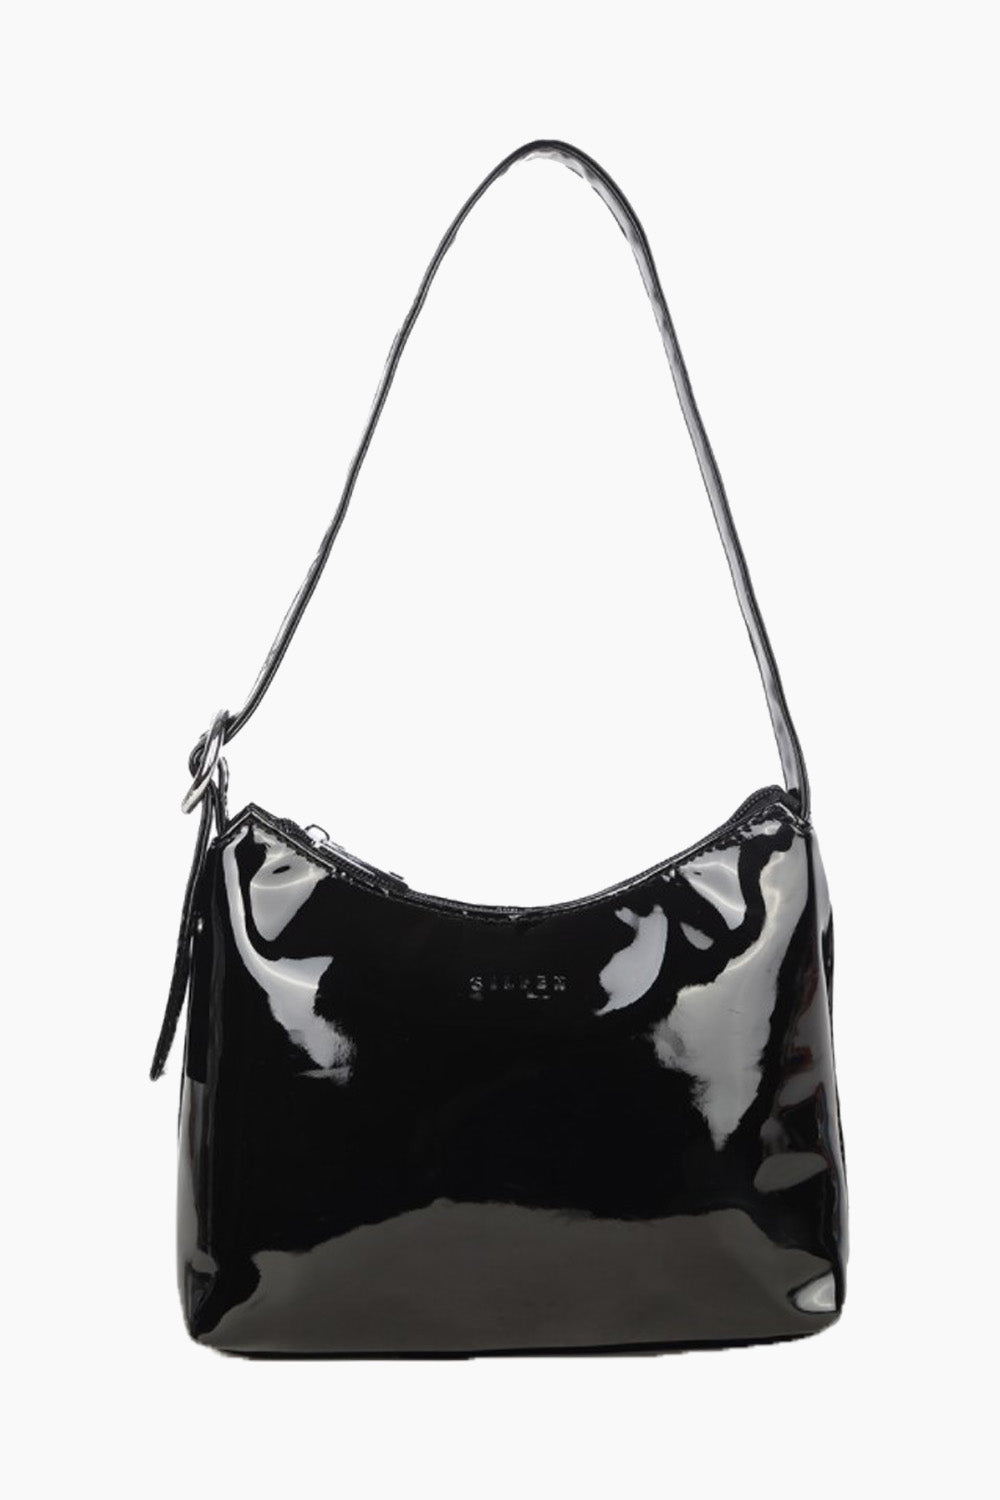 Ulrikke Shoulder Bag - Black Lacquer - Silfen Studio - Sort One Size Daniel Sort 498.00 DKK